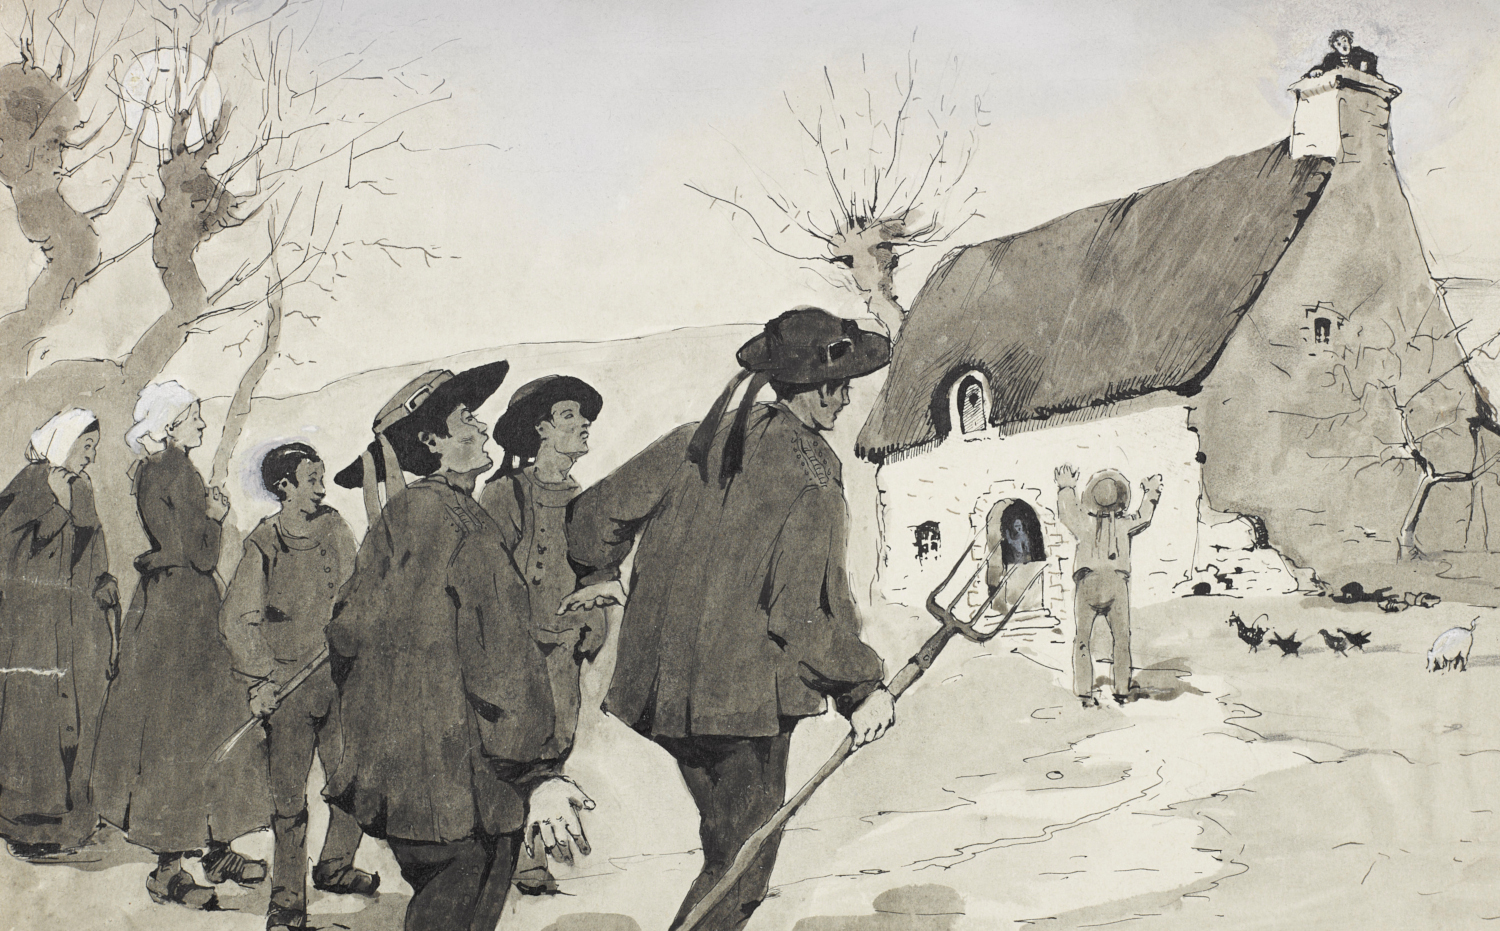 Un groupe de paysans. Gouache et lavis sur papier par H. Baillif, sans date. Musée de Bretagne : 998.0058.40.